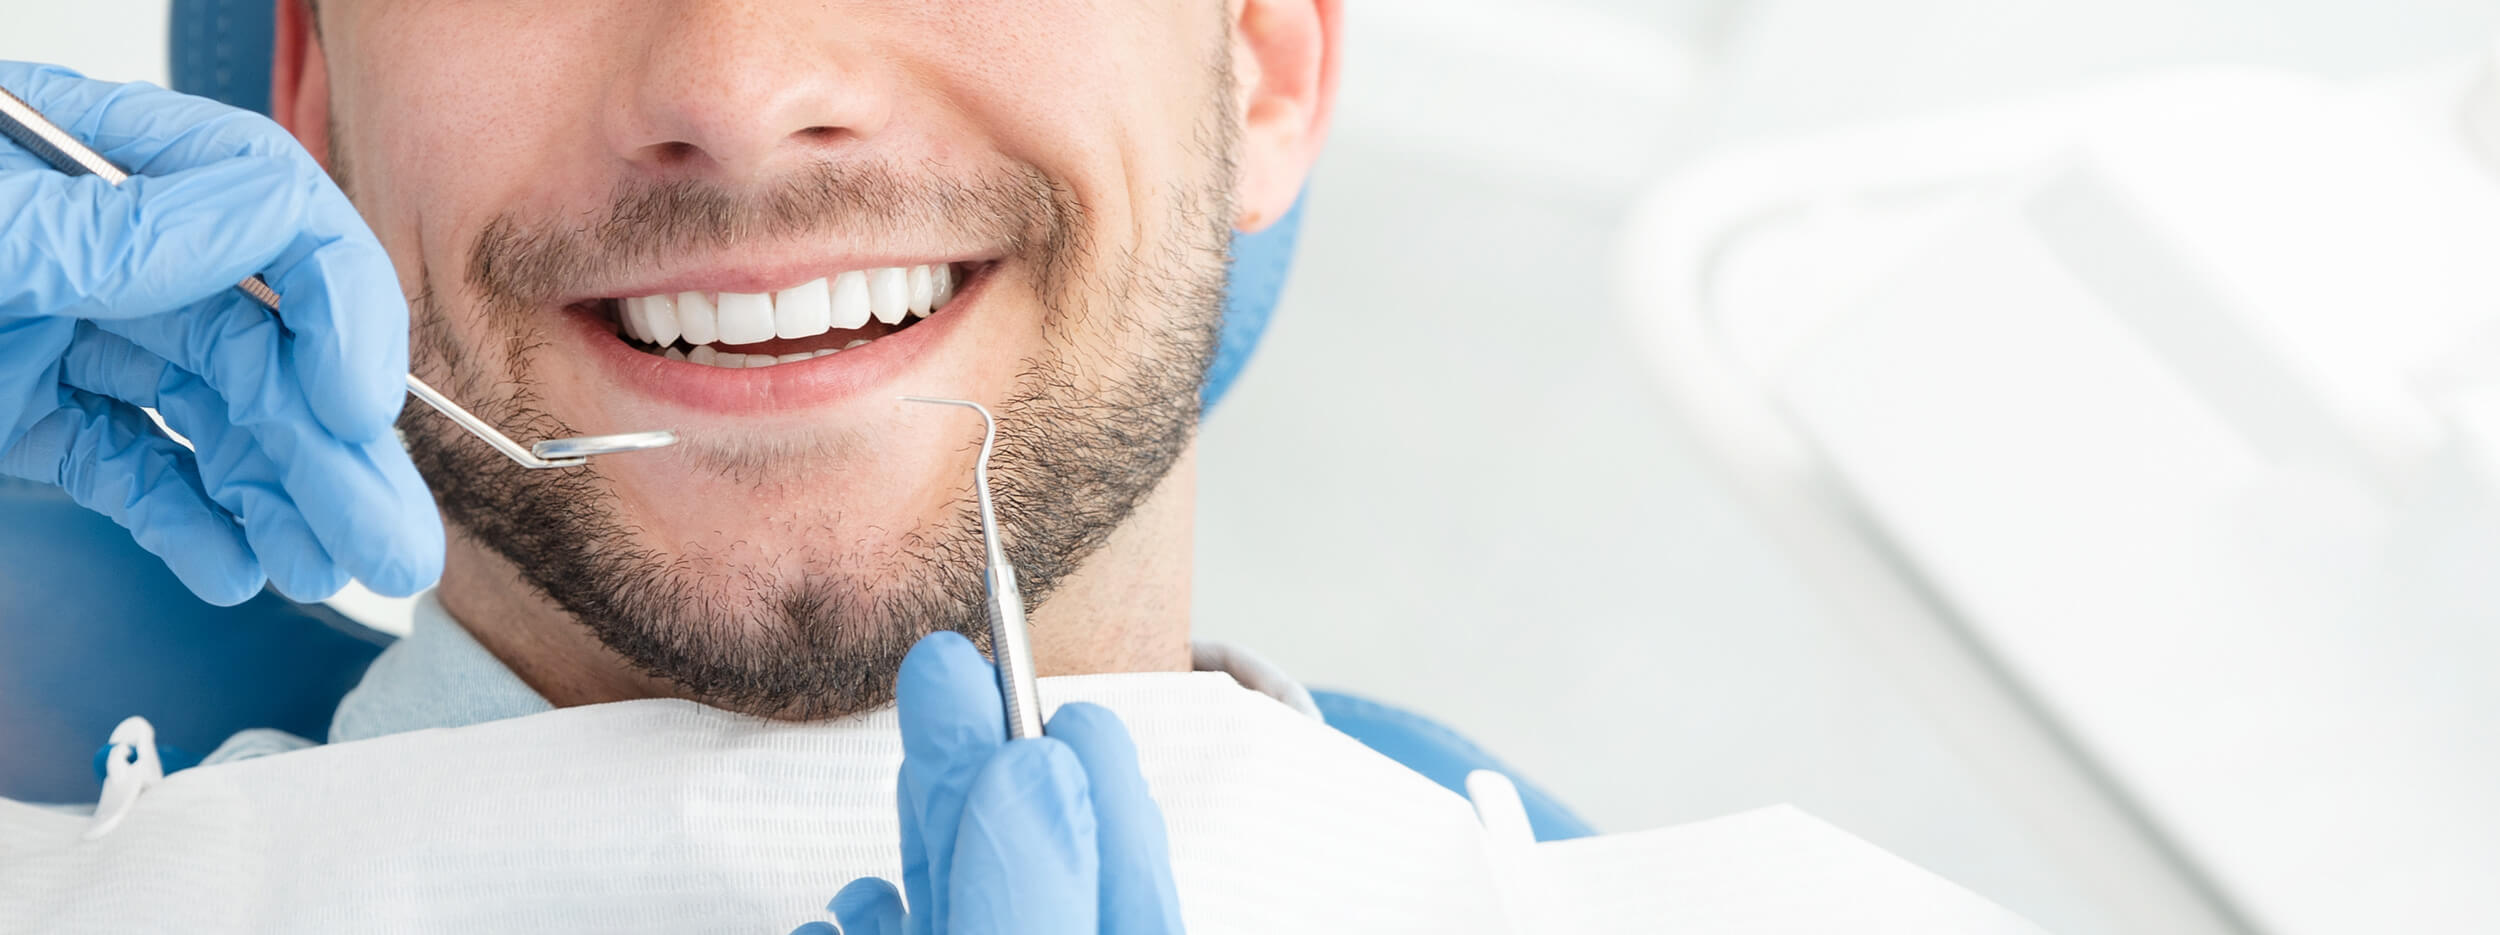 blanchiment dentaire dentaclinic rixensart